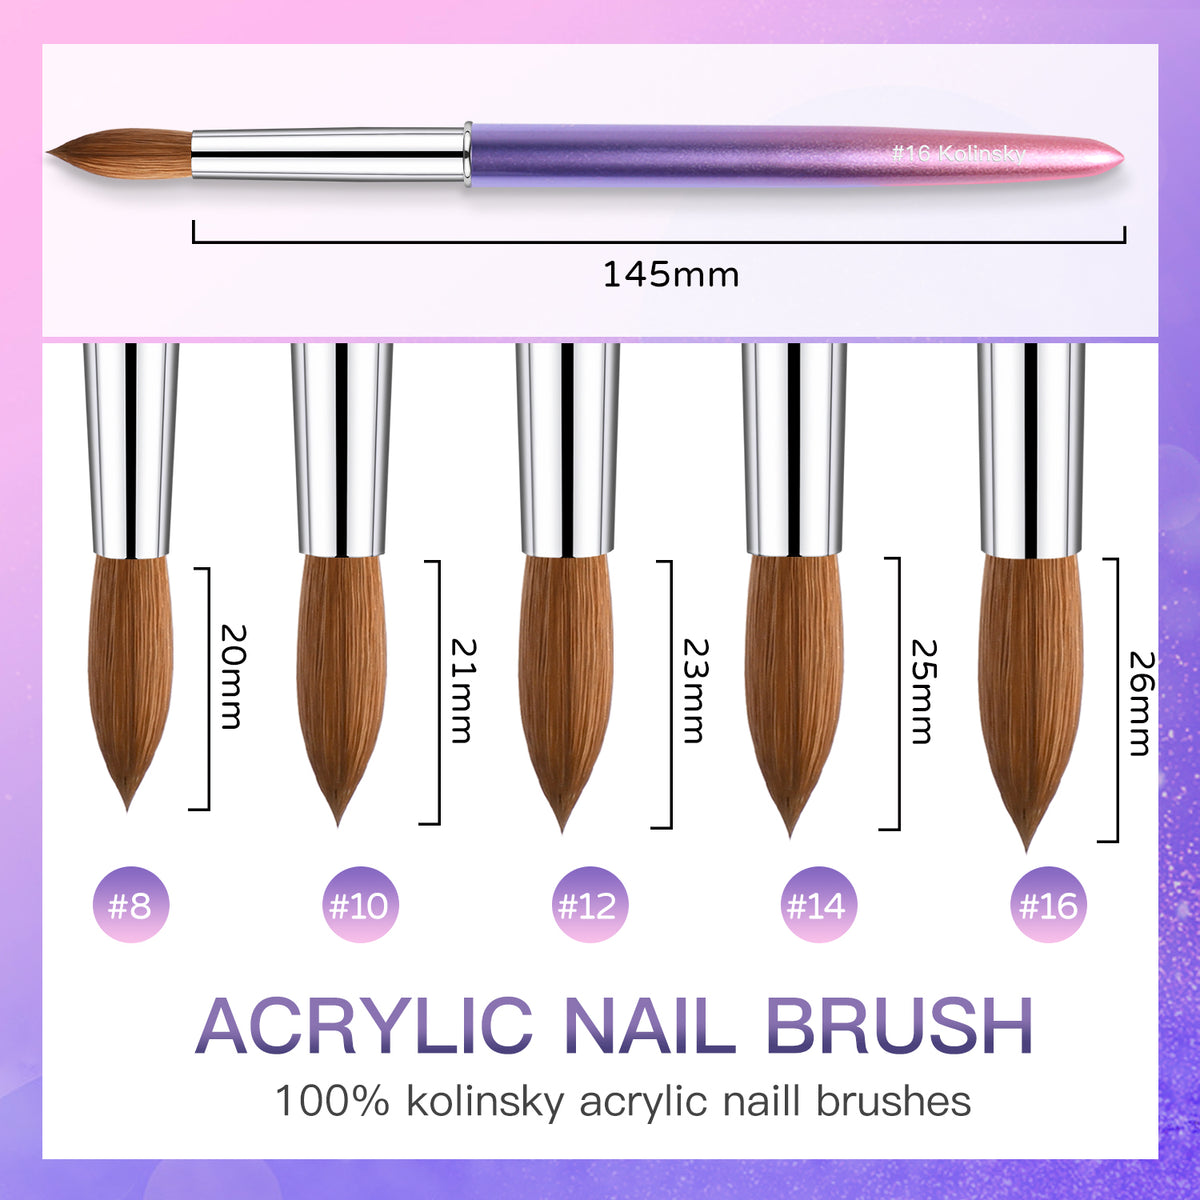 Yasterd Acrylic Nail Brush 100% Kolinsky Acrylic Brushes for Nails Size 10  Oval Crimped Shaped Nail Brushes for Acrylic Application Black Wood Handle